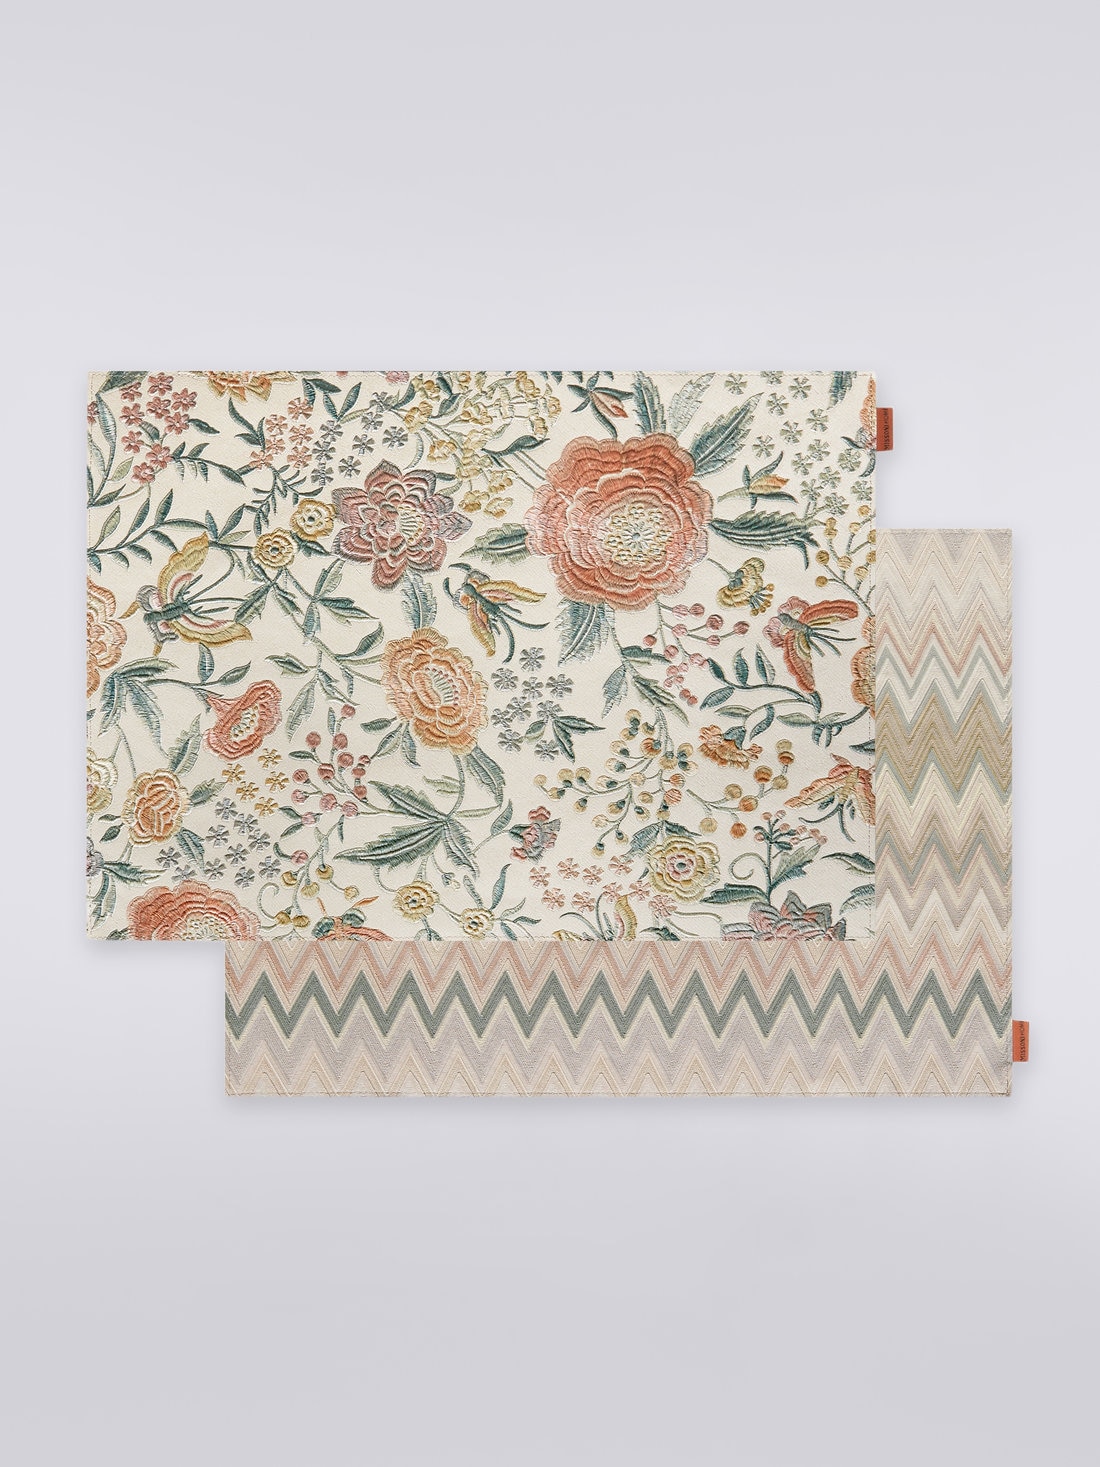 Papermat, Paar Tischsets 35x48 cm, Mehrfarbig  - 8051275525660 - 1